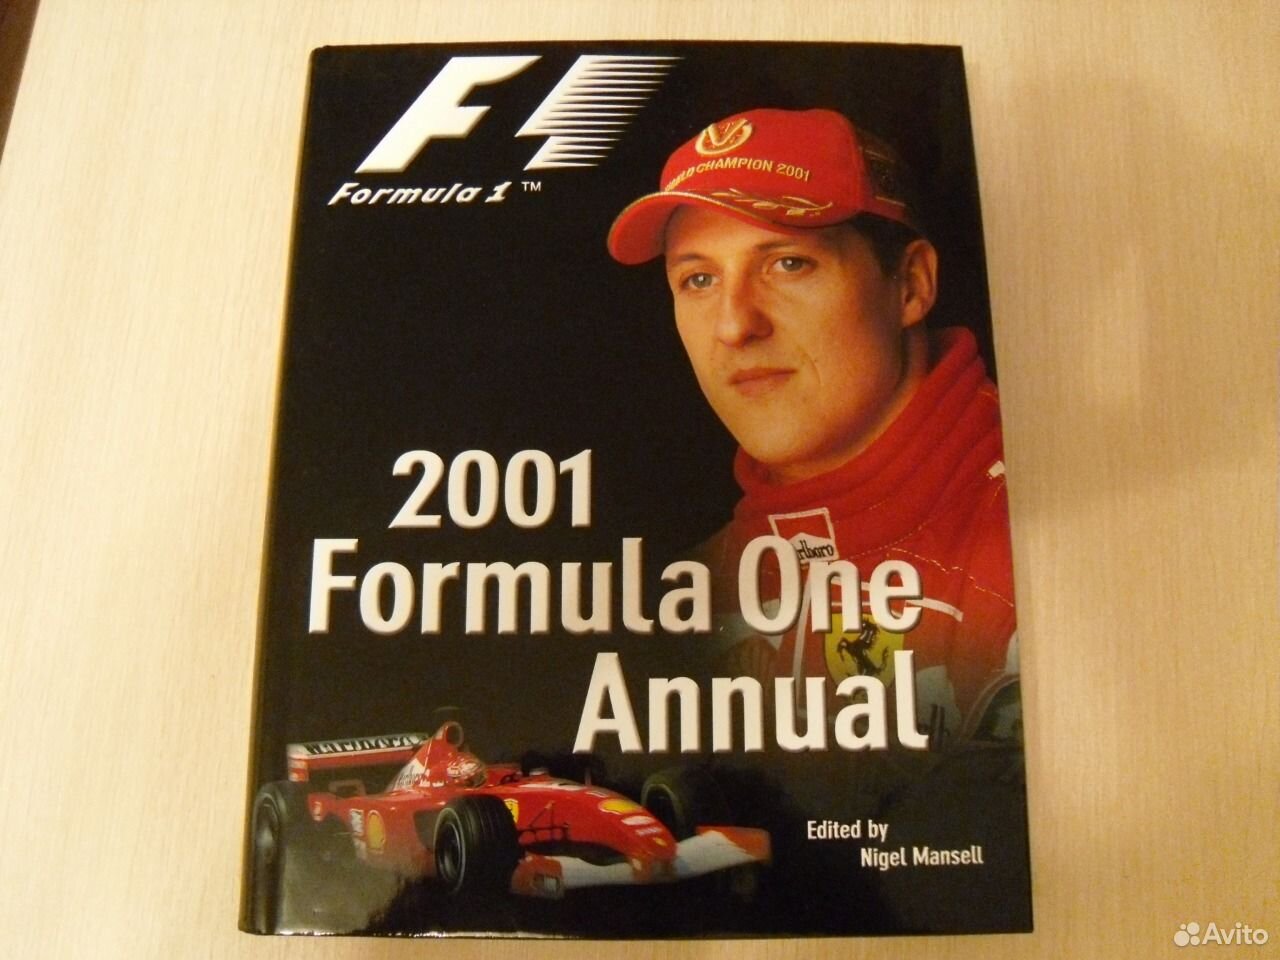 Справочник Формула-1-2001 новый 670 стр подарочный — фотография №1